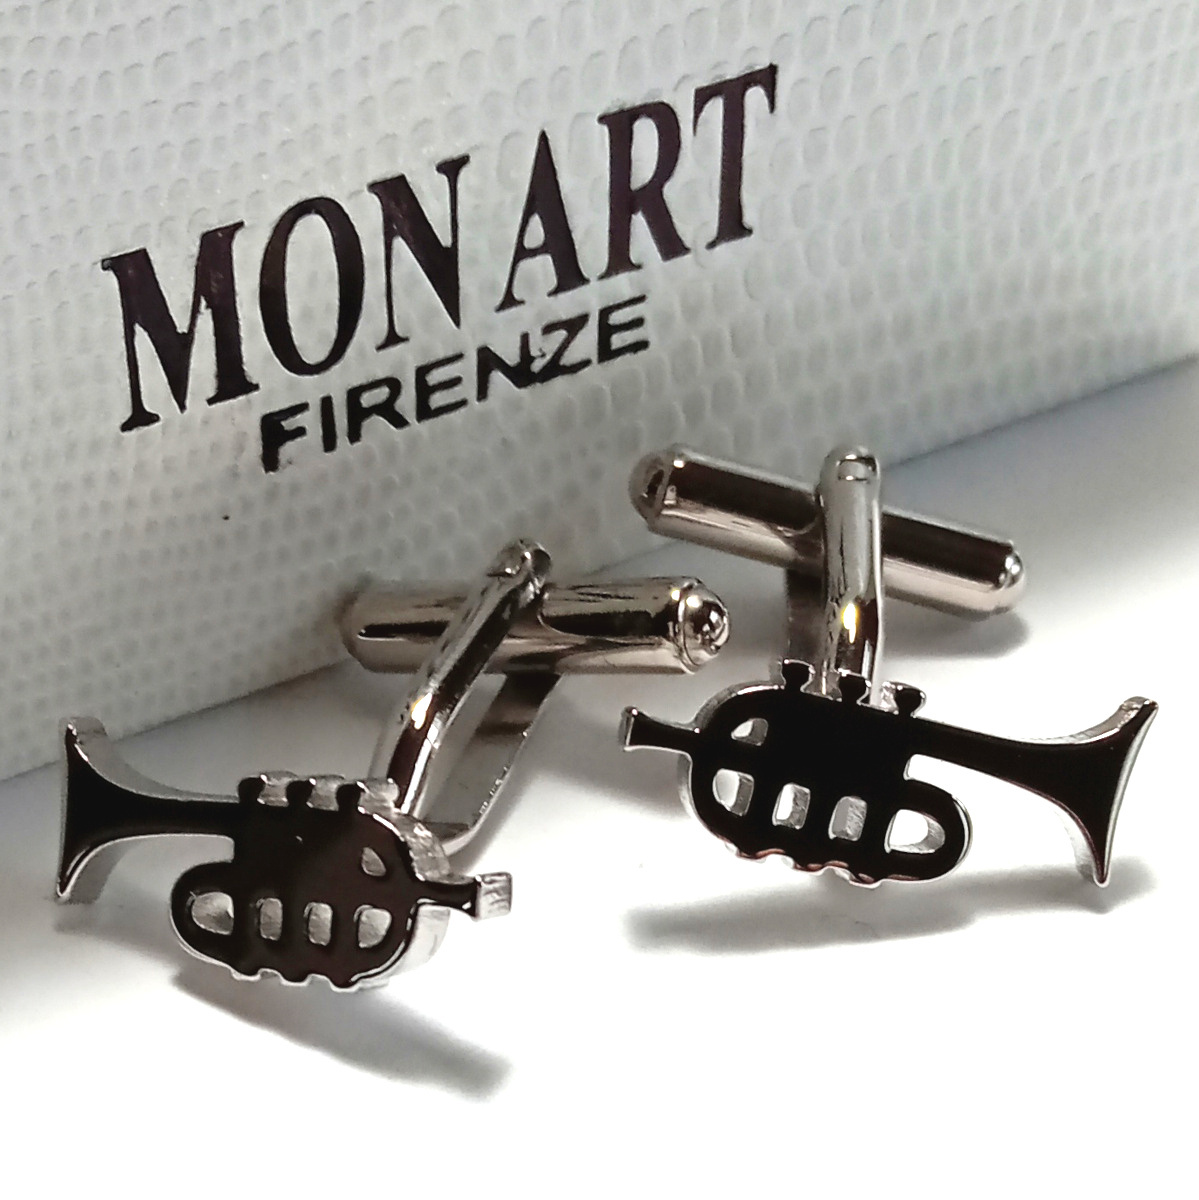 【mac180】 новый товар 　MON ART ...　...　... ссылка ...　  серебристый 　 труба  сюжет  　 музыкальный инструмент 　 аксессуары 